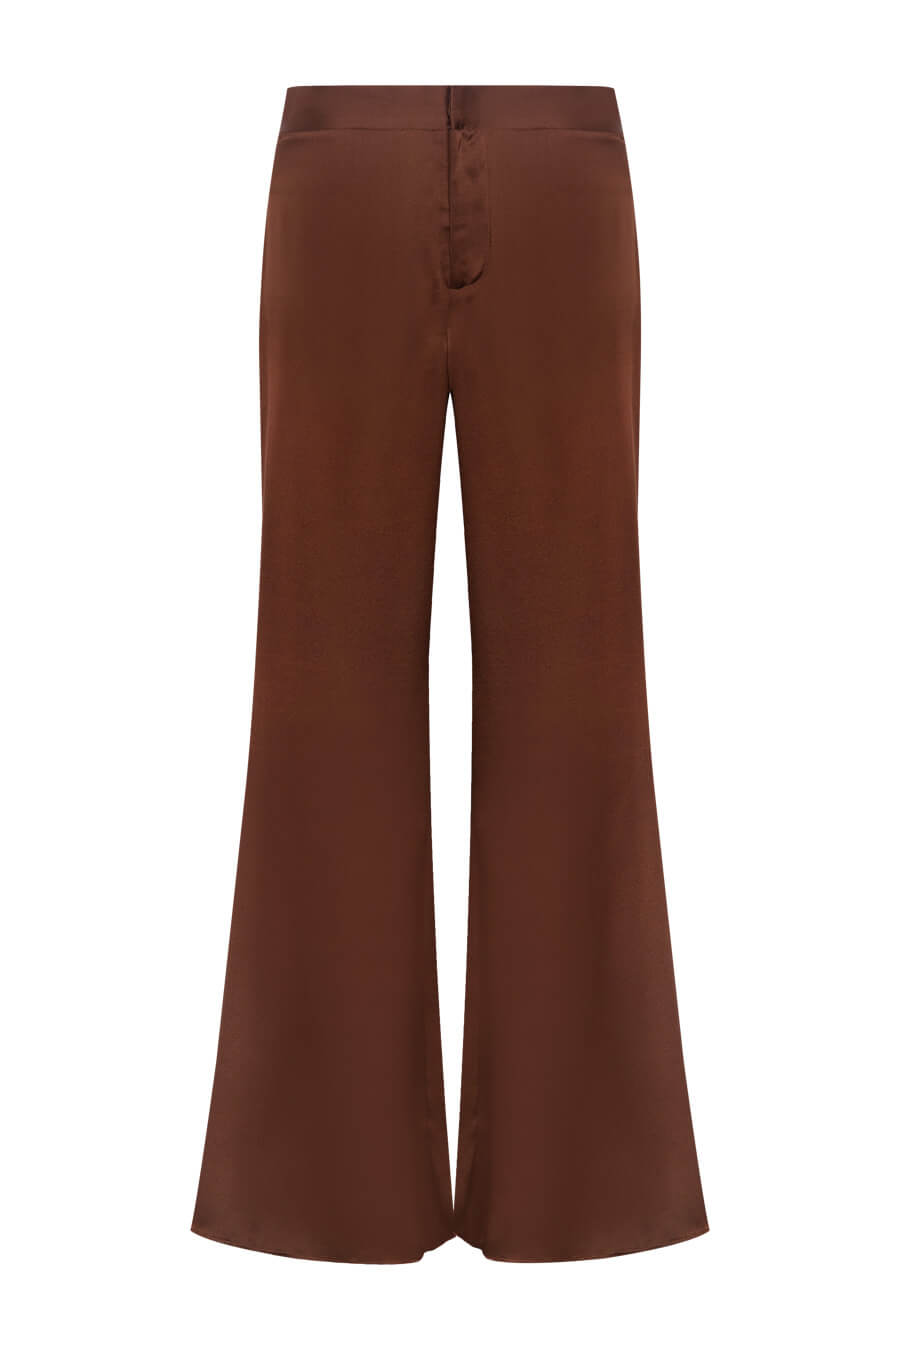 Silk pants in brown